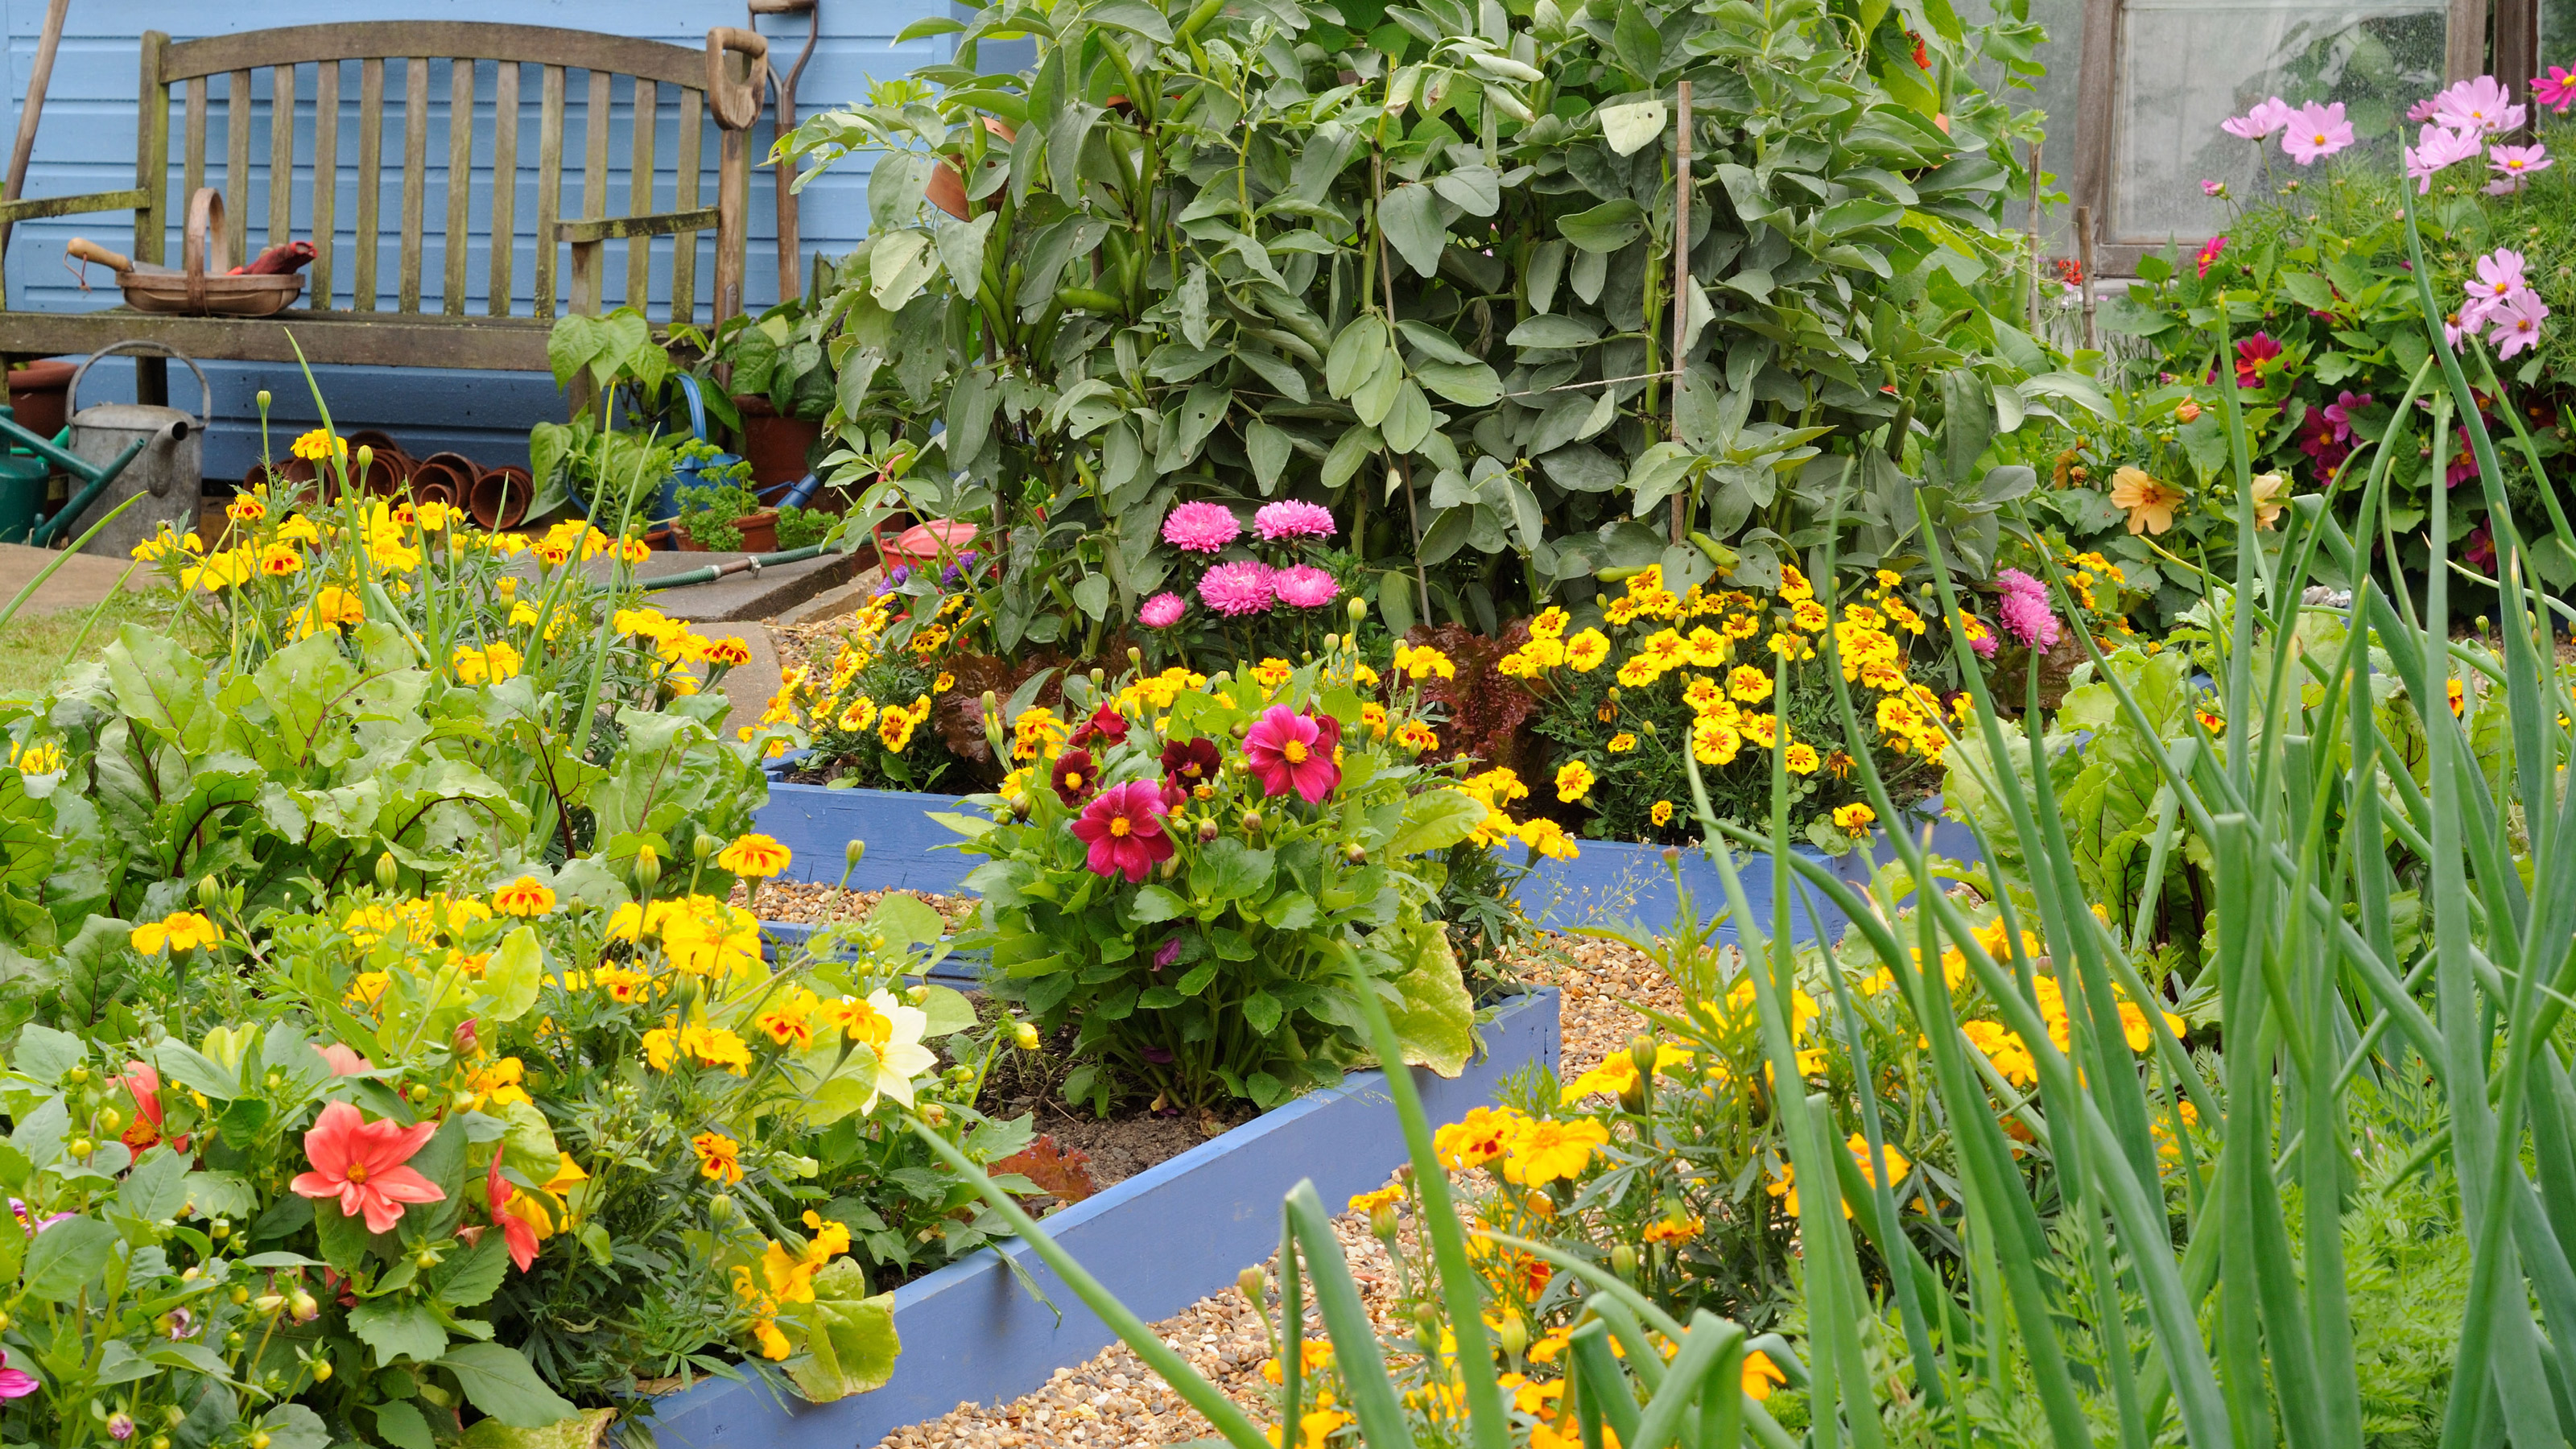 The English Potager Garden - The Sustainable Garden